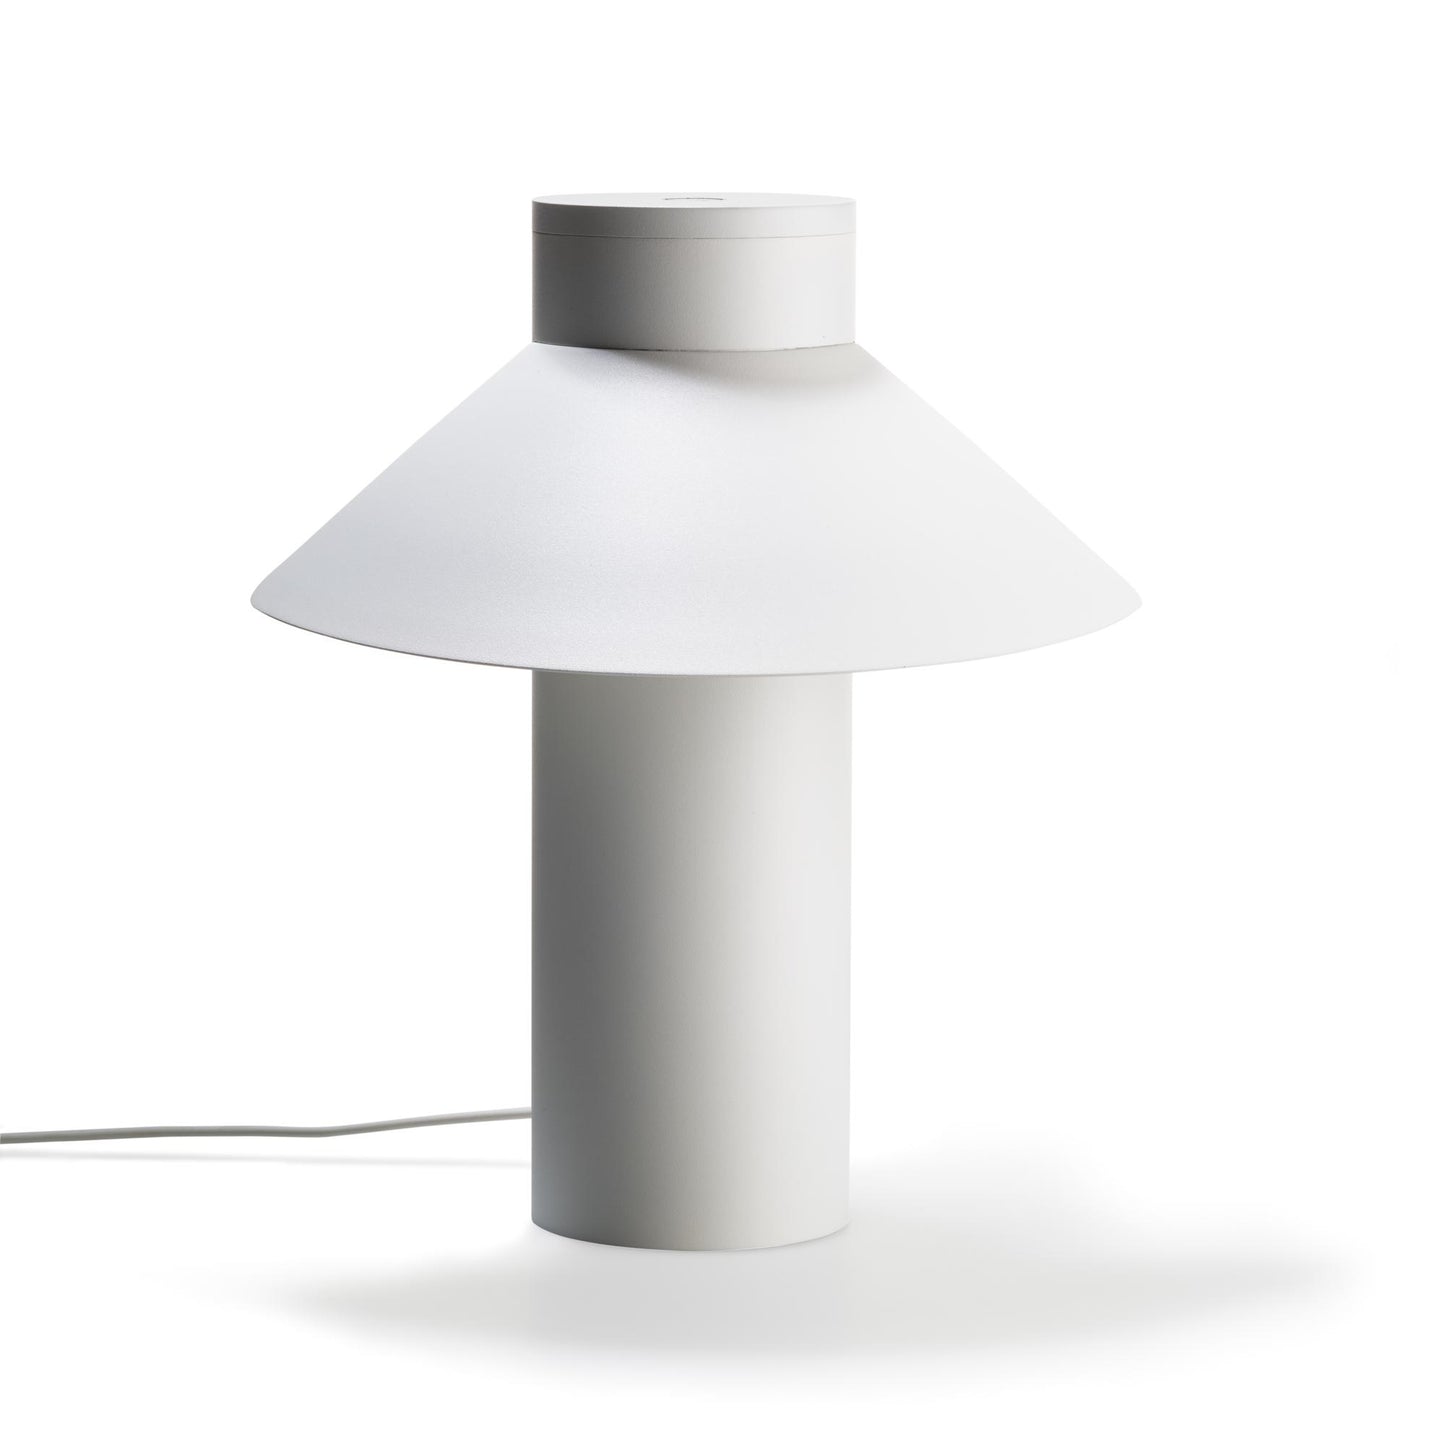 Riscio Table Lamp by Karakter #White